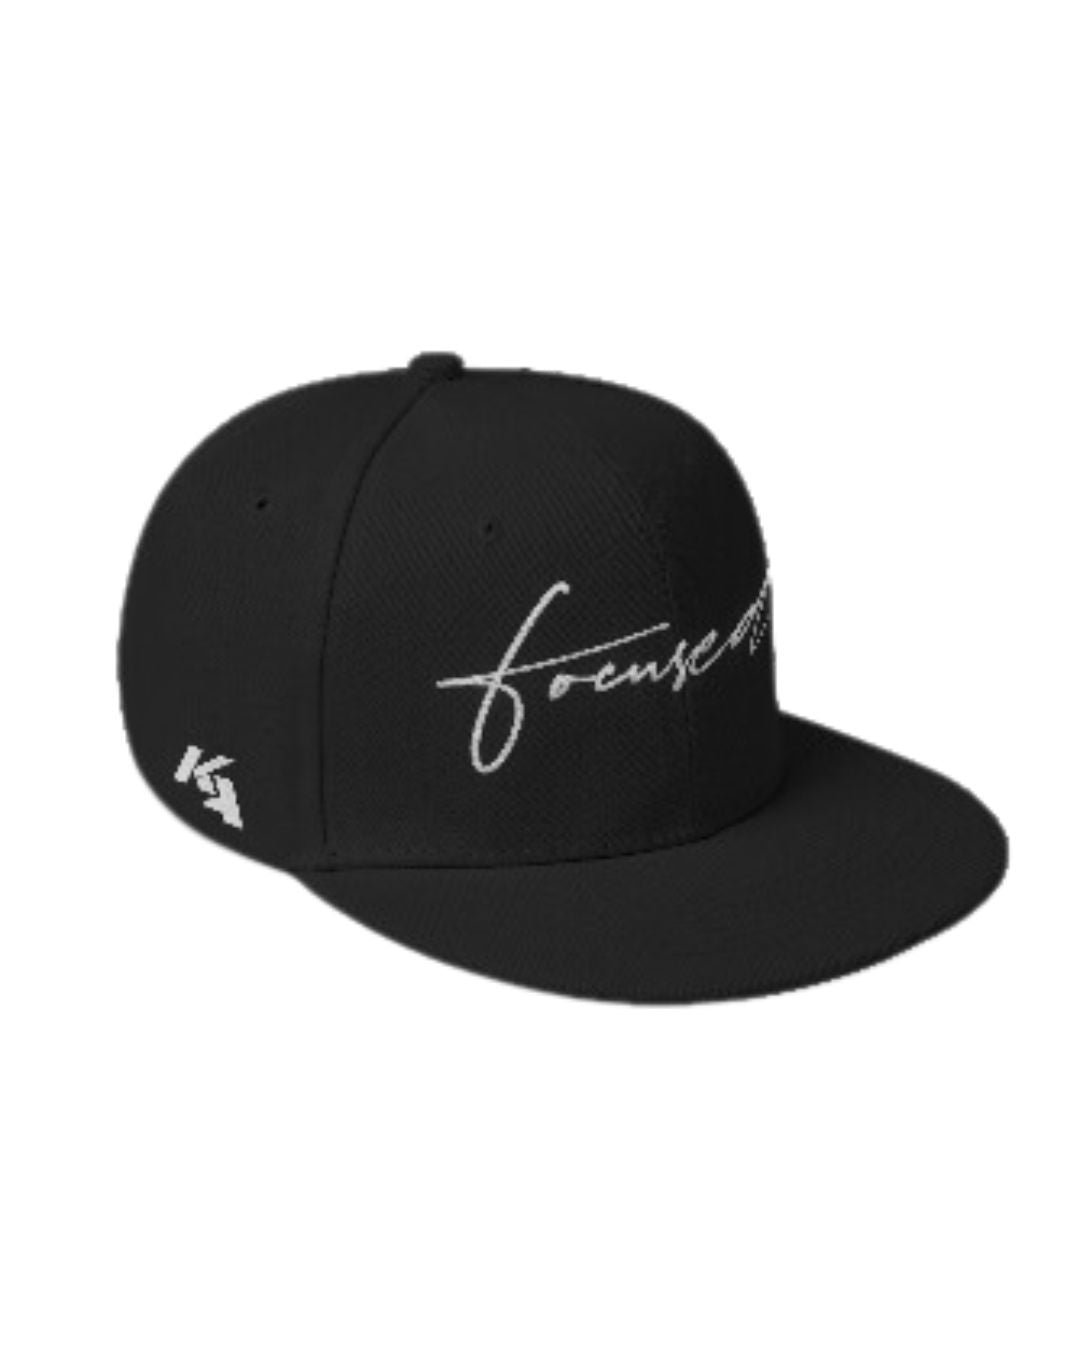 FOCUSED Snapback Hat - Black